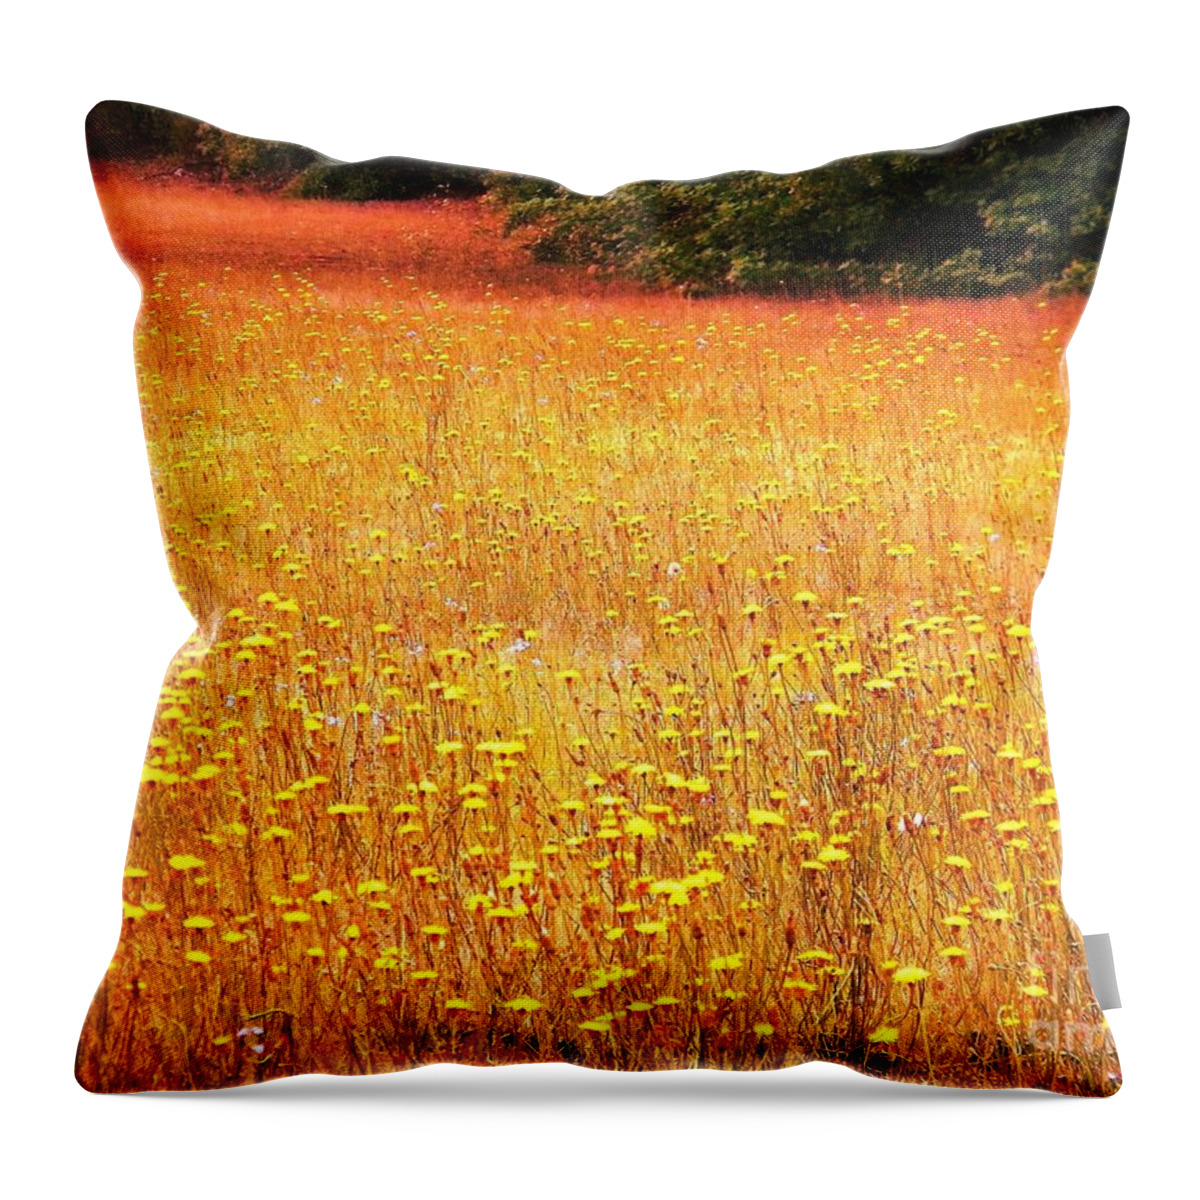 Postcard Throw Pillow featuring the digital art Golden Pastures by Matthew Seufer